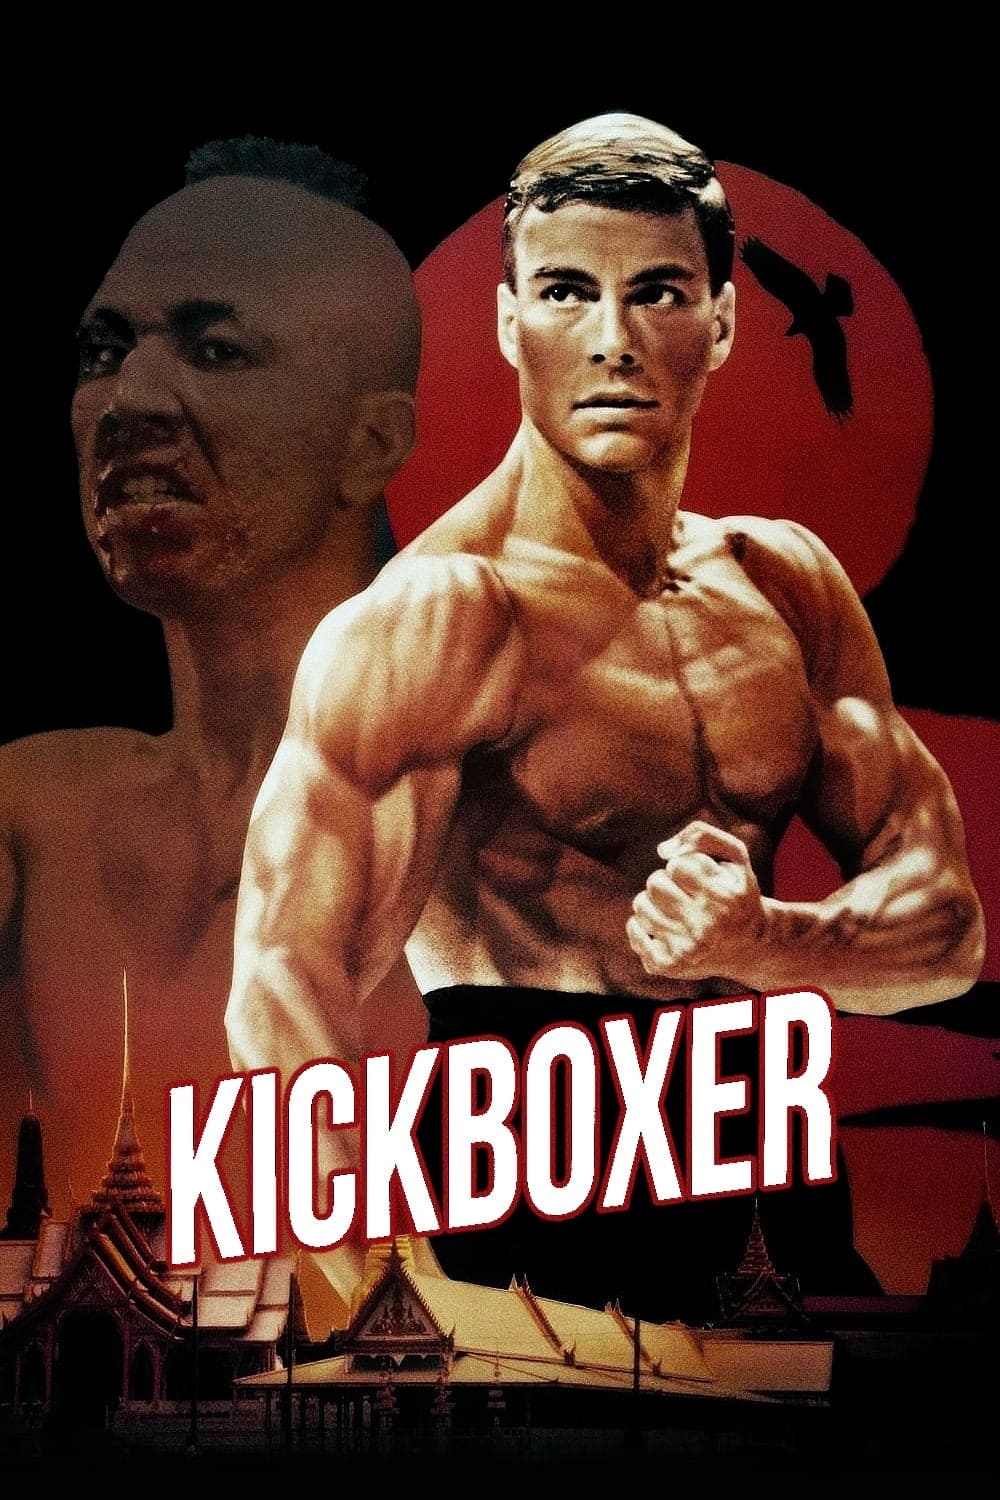 Kickboxer: O Desafio do Dragão